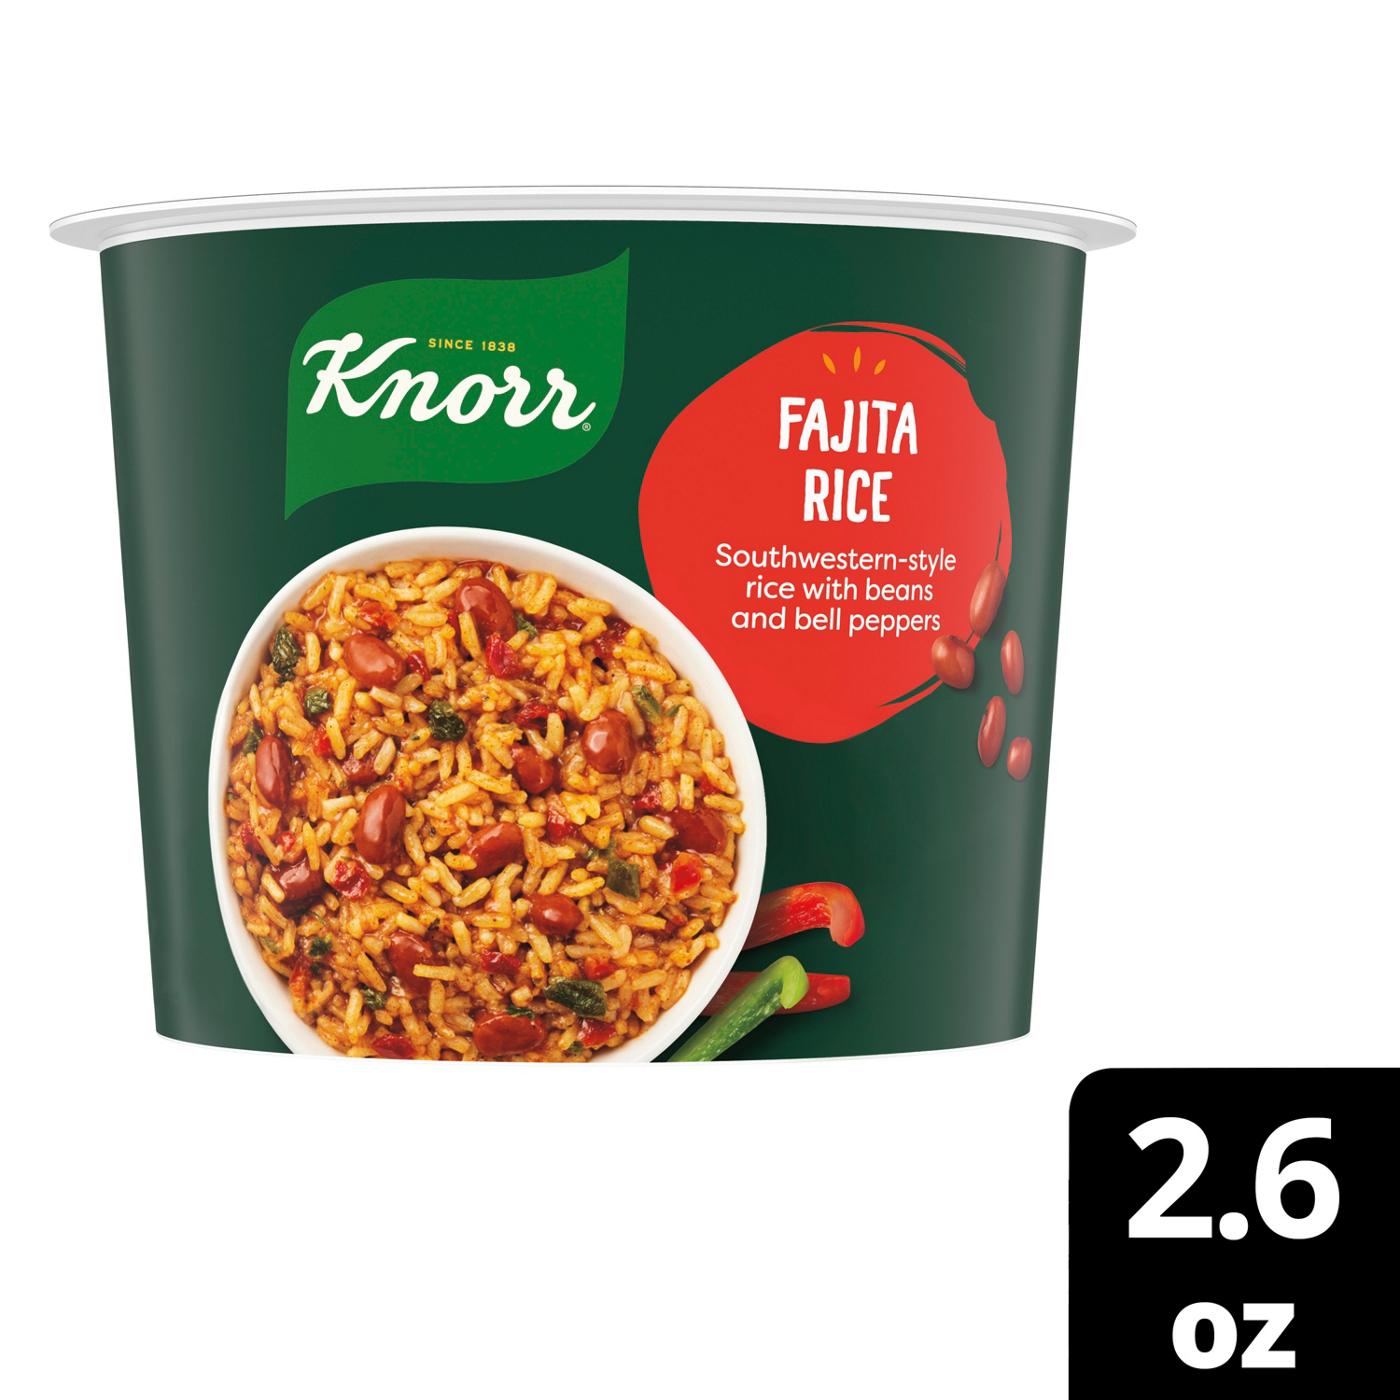 Knorr Fajita Rice Cup; image 5 of 7